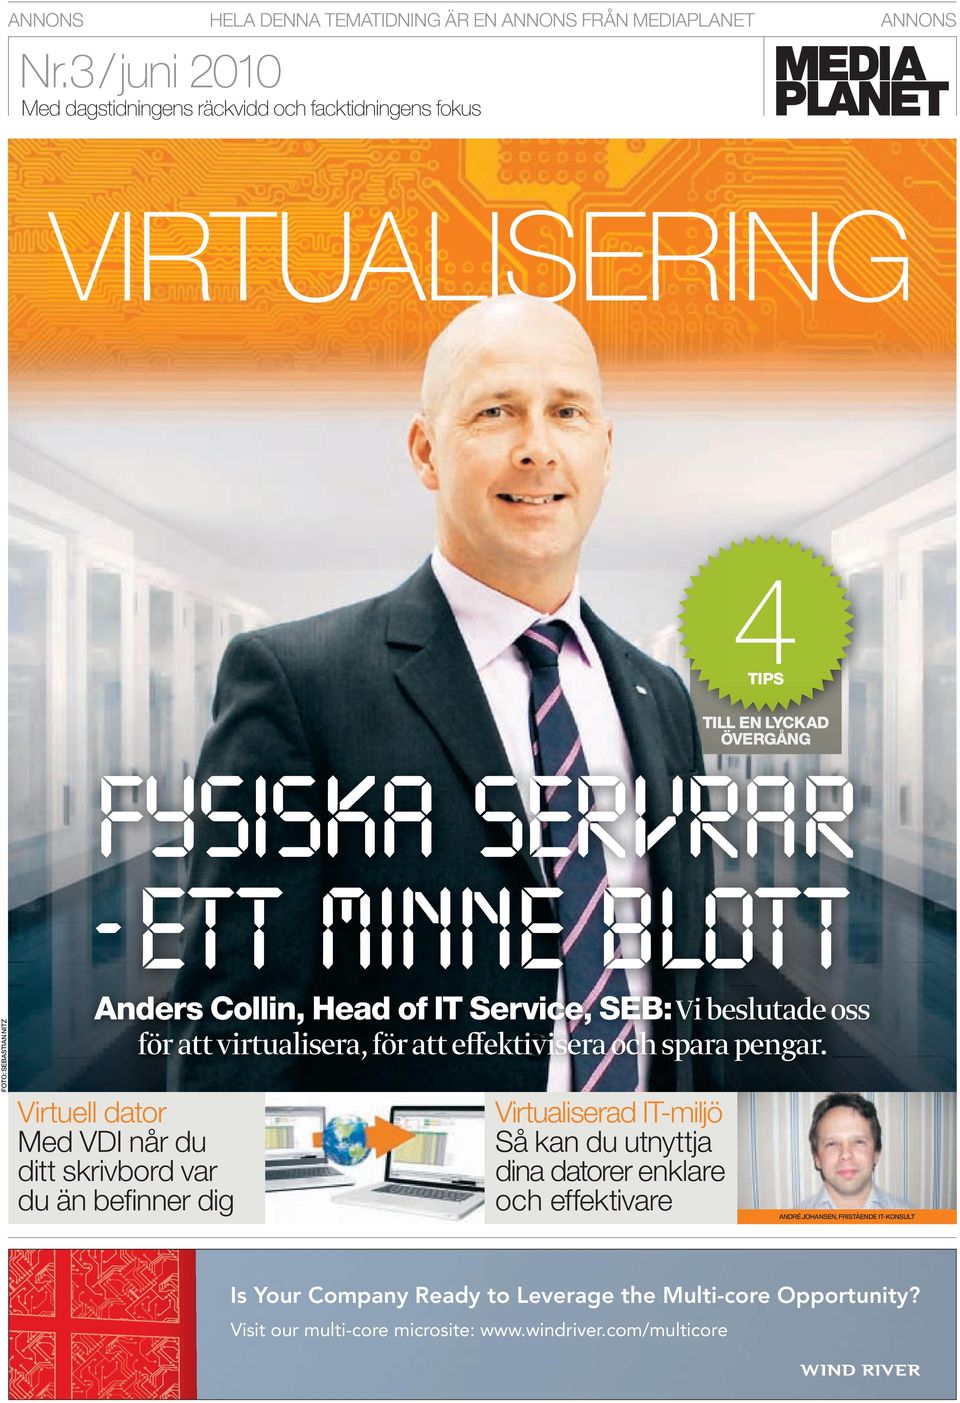 BLOTT Anders Collin, Head of IT Service, SEB: Vi beslutade oss för att virtualisera, för att effektivisera och spara pengar.